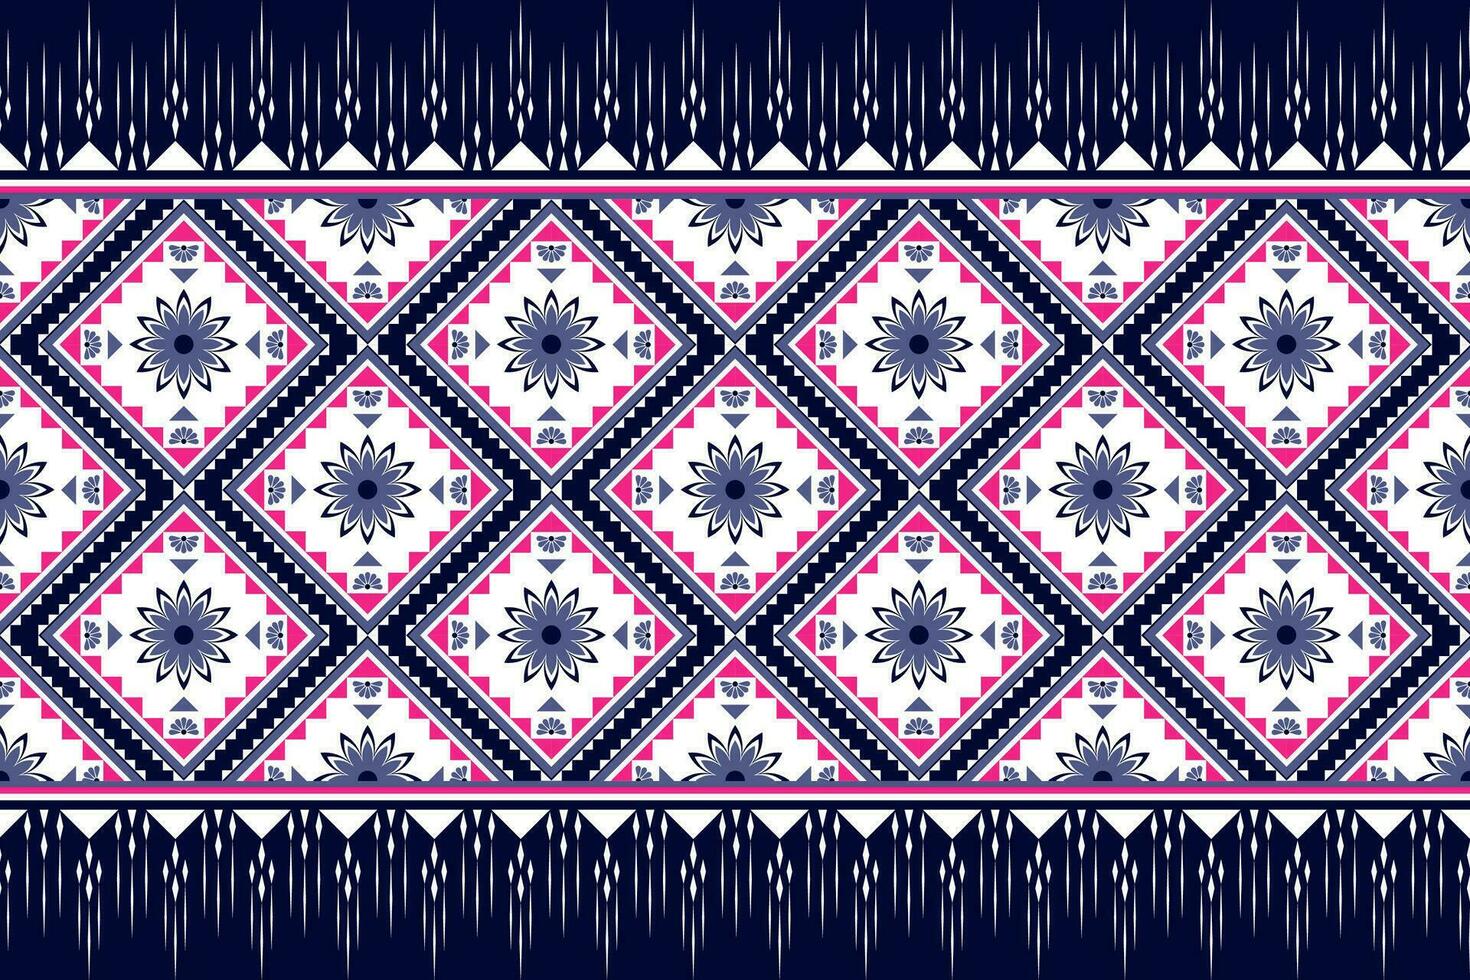 geometrisch ethnisch Muster traditionell Design zum Hintergrund, Teppich, Hintergrund, Kleidung, Verpackung, Batik, Stoff, Vektor Illustration Stickerei Stil.